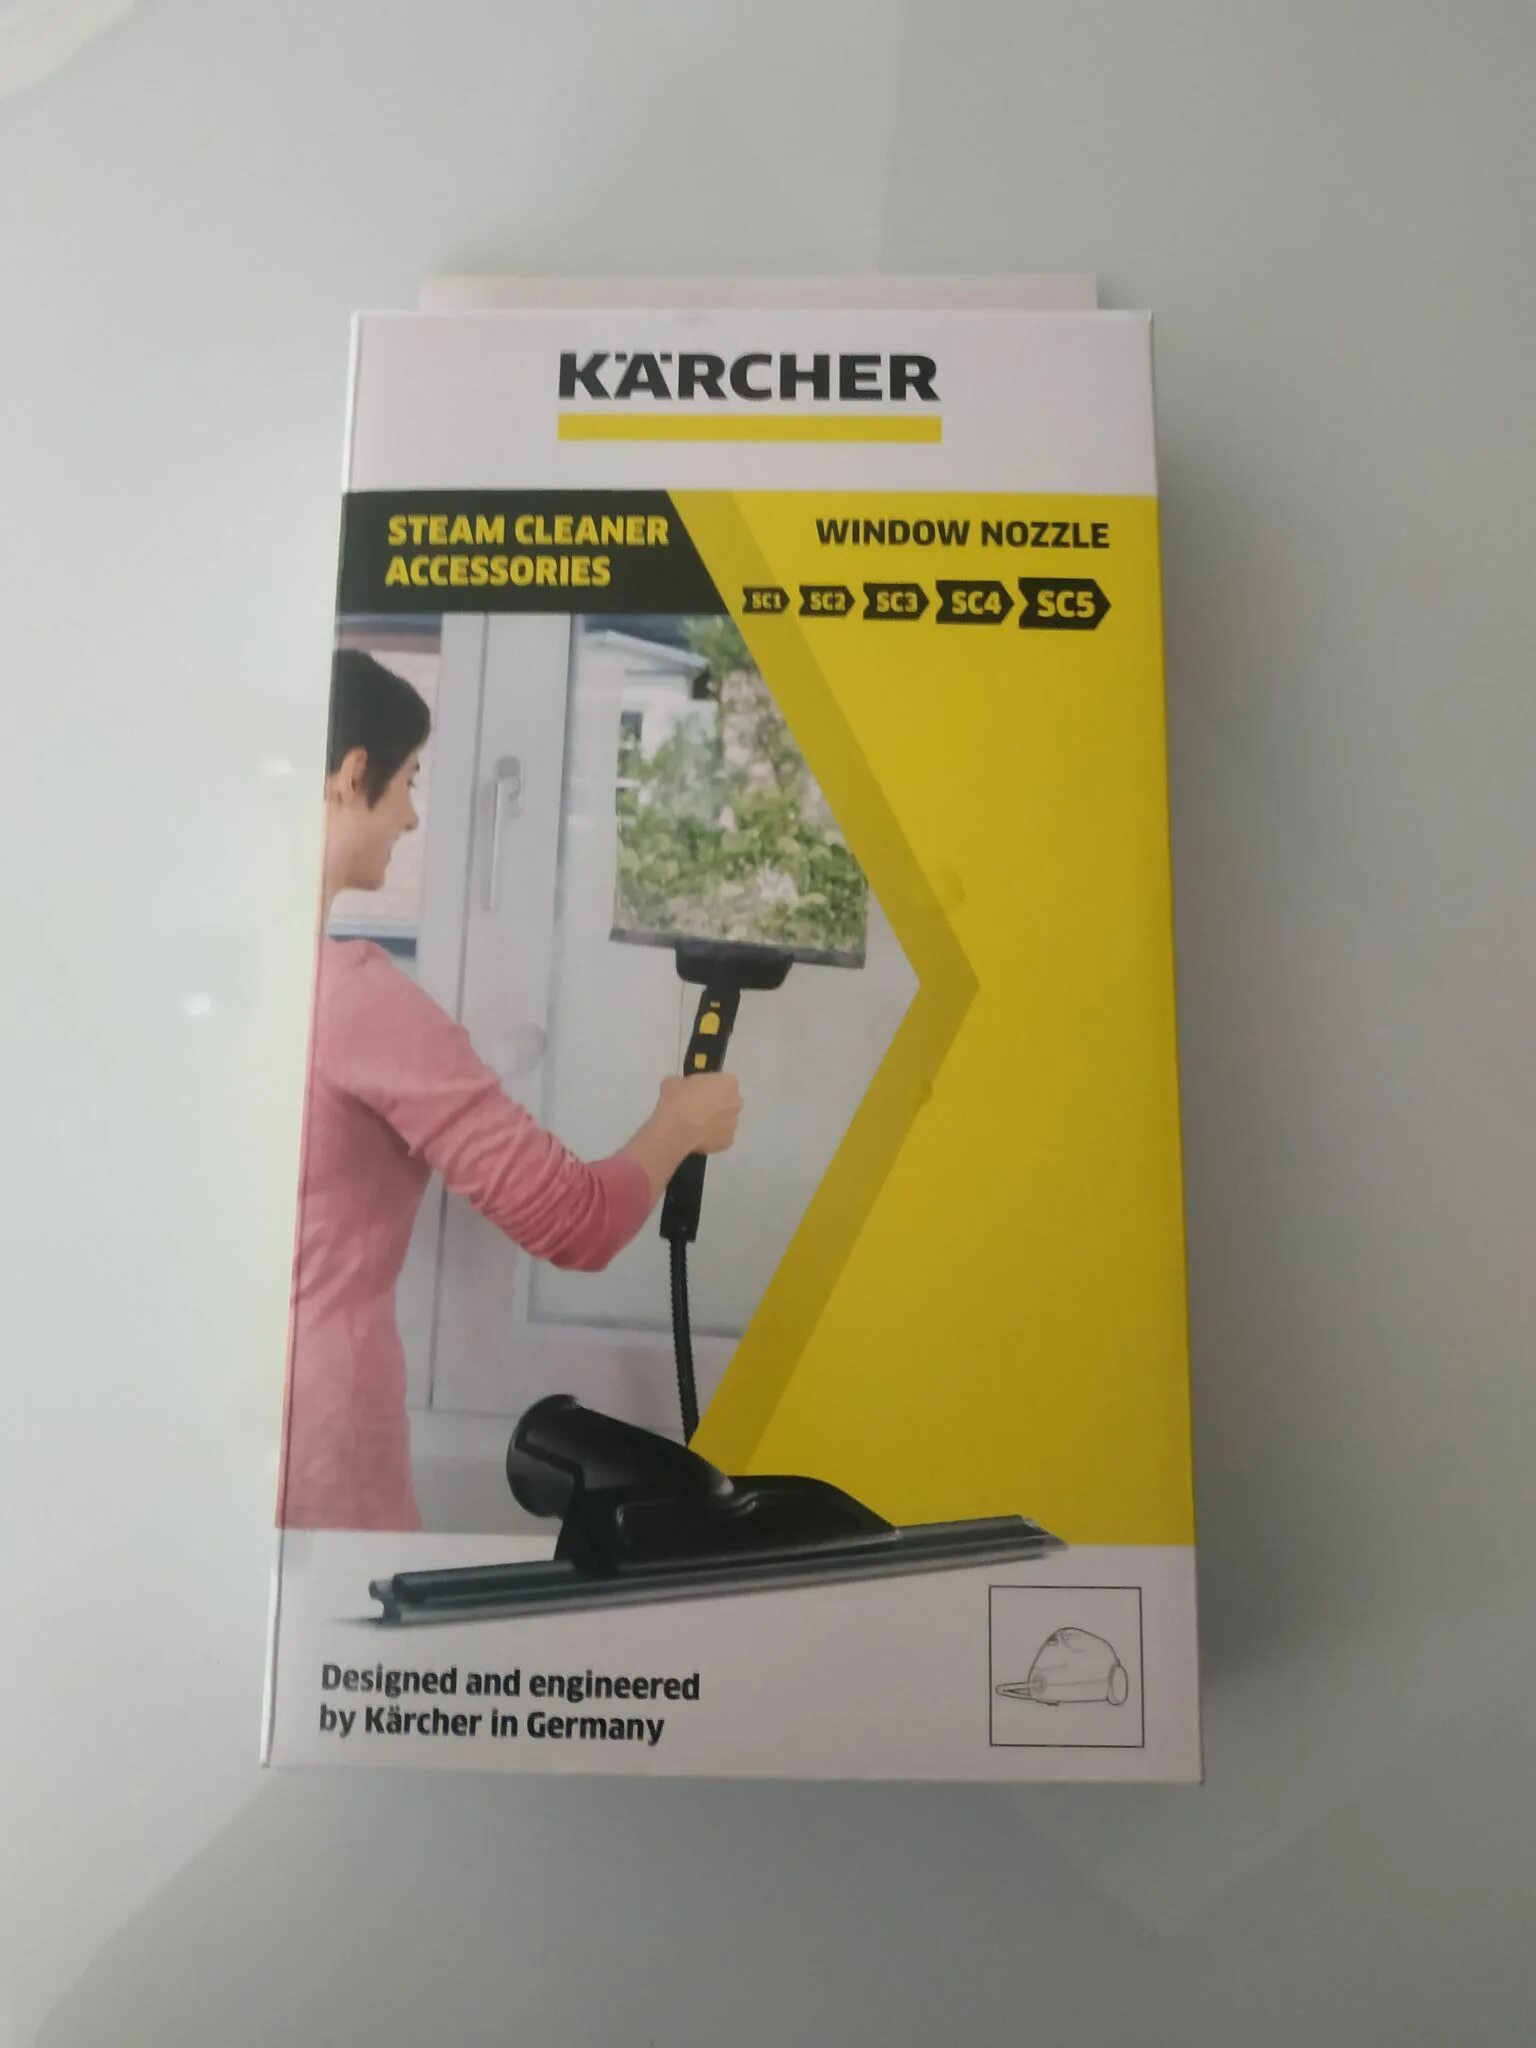 Пароочиститель насадка для мытья окон. Karcher 2.863 насадка. Насадка для мытья окон 2.863-025.0 Karcher для пароочистителя. 2.863-025.0 Насадка для мойки окон. 2.863-025.0 Керхер.